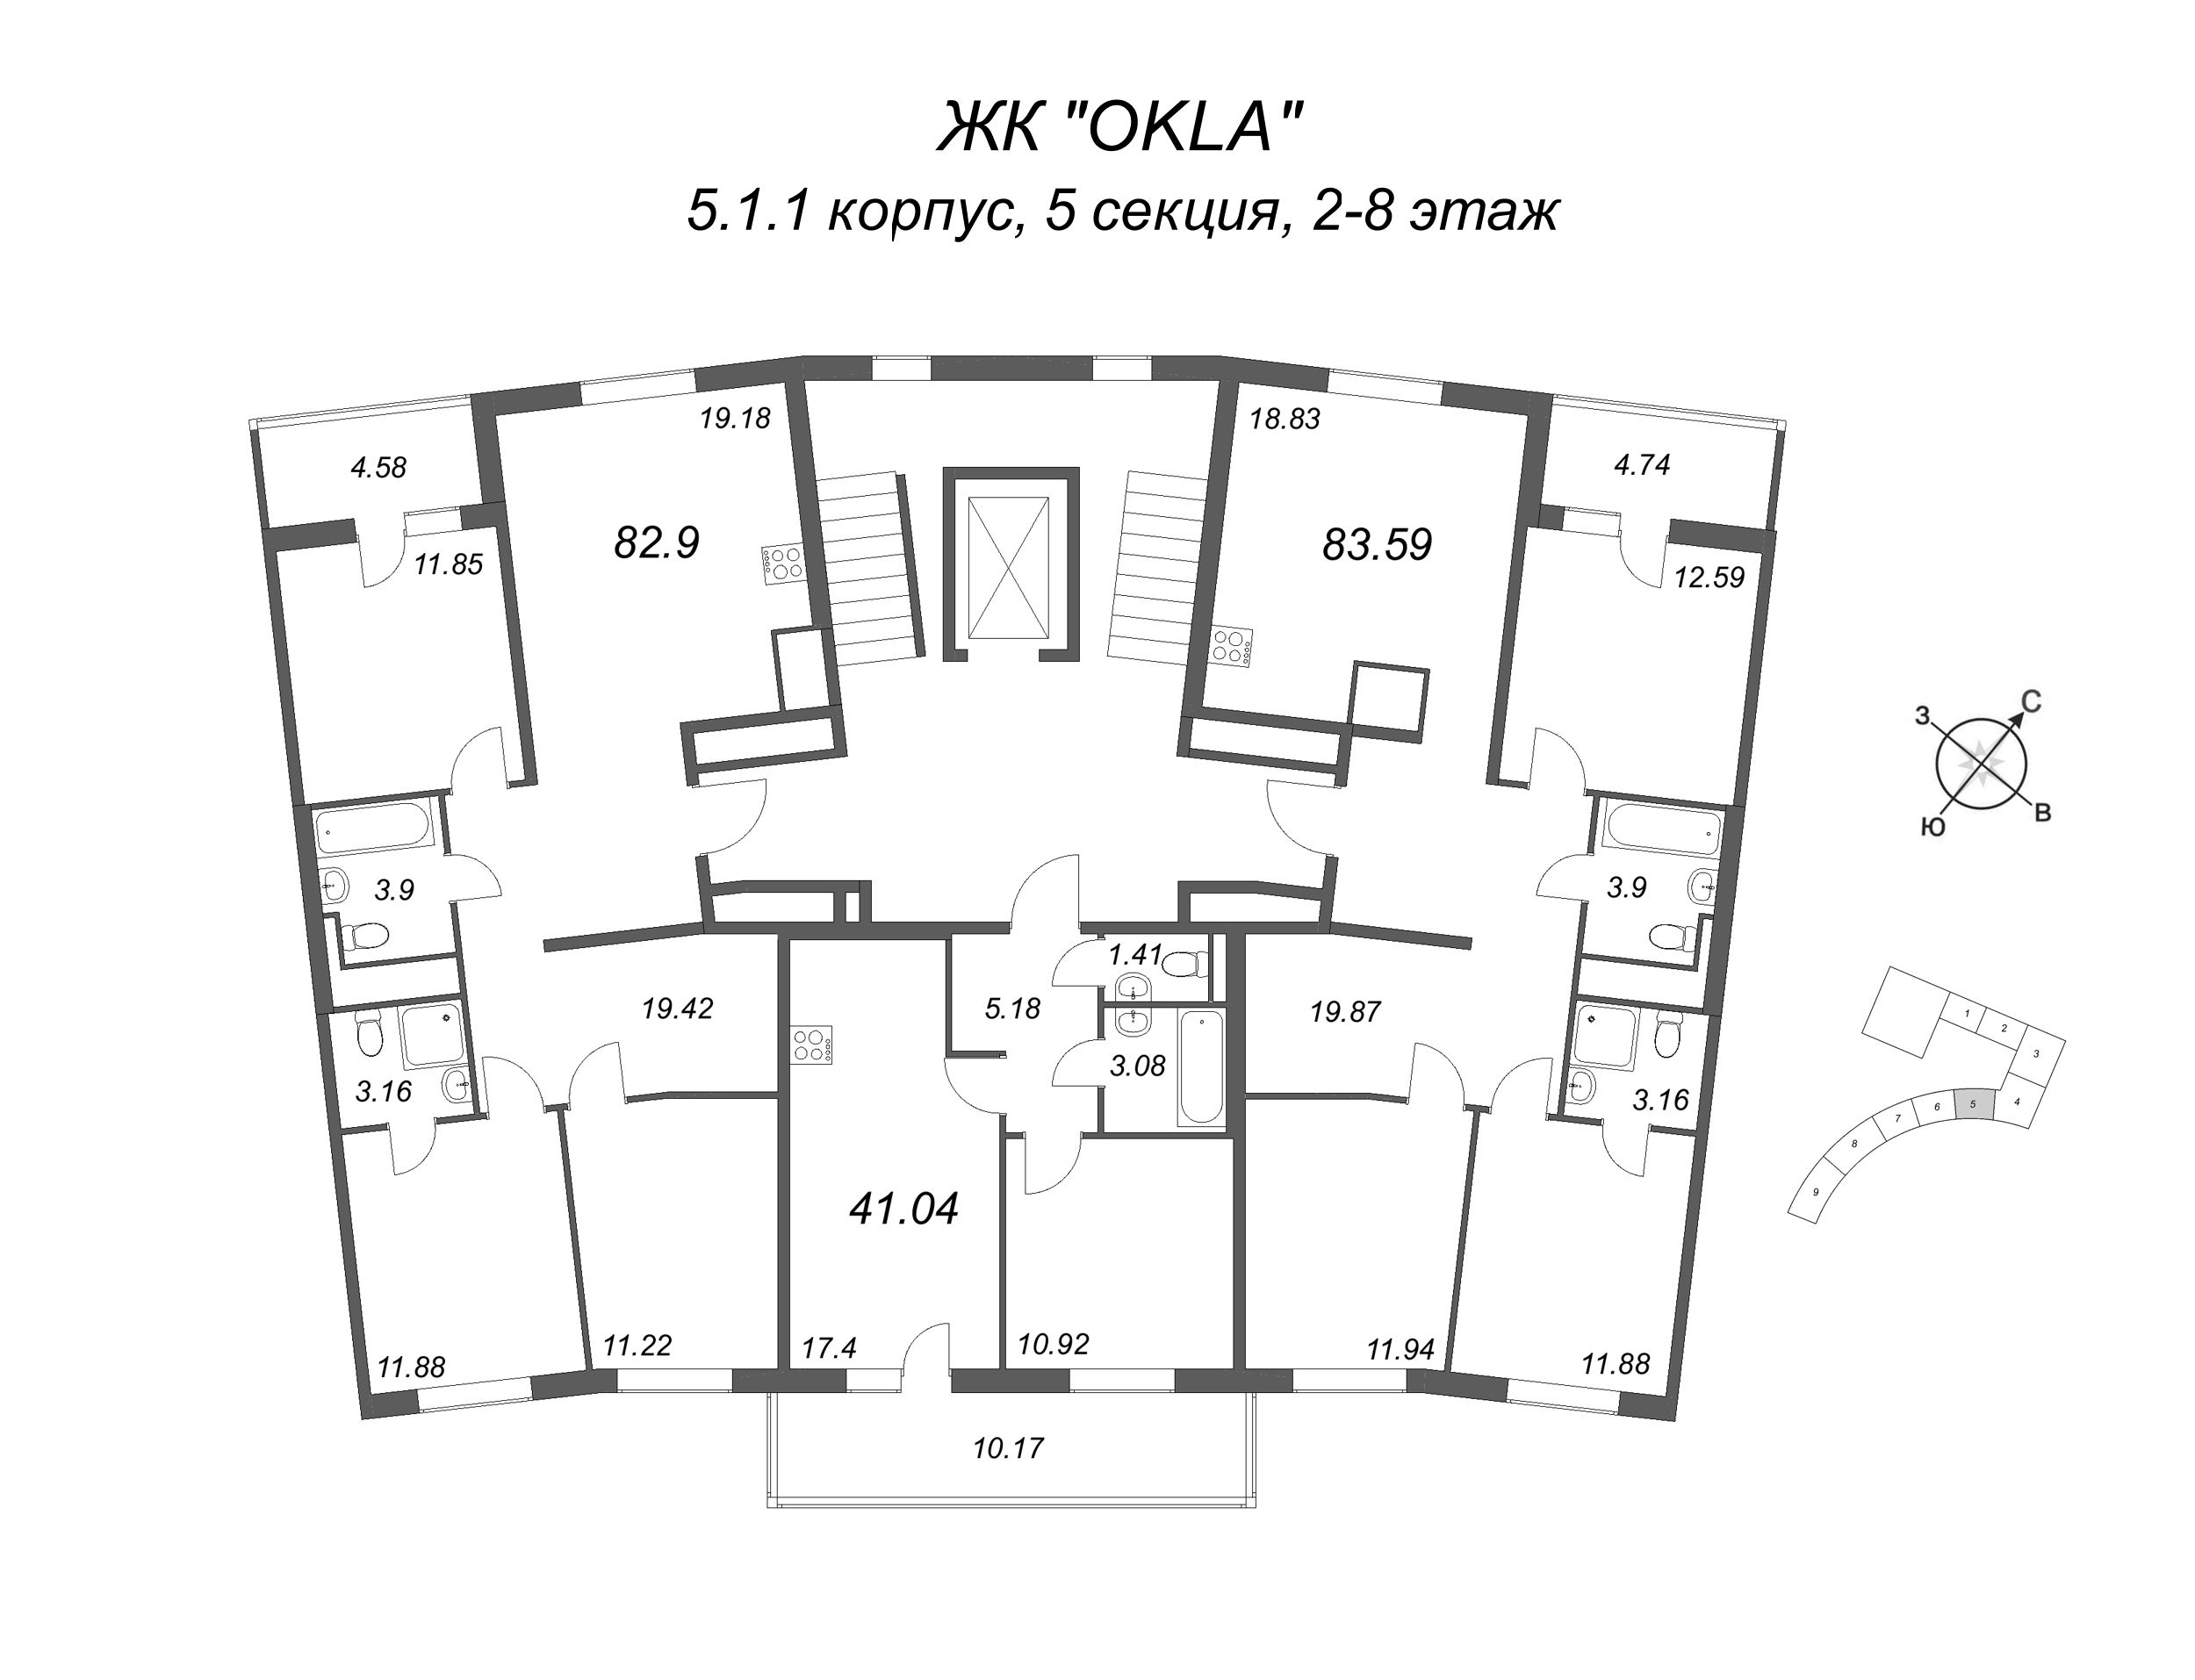 4-комнатная (Евро) квартира, 85.19 м² в ЖК "OKLA" - планировка этажа